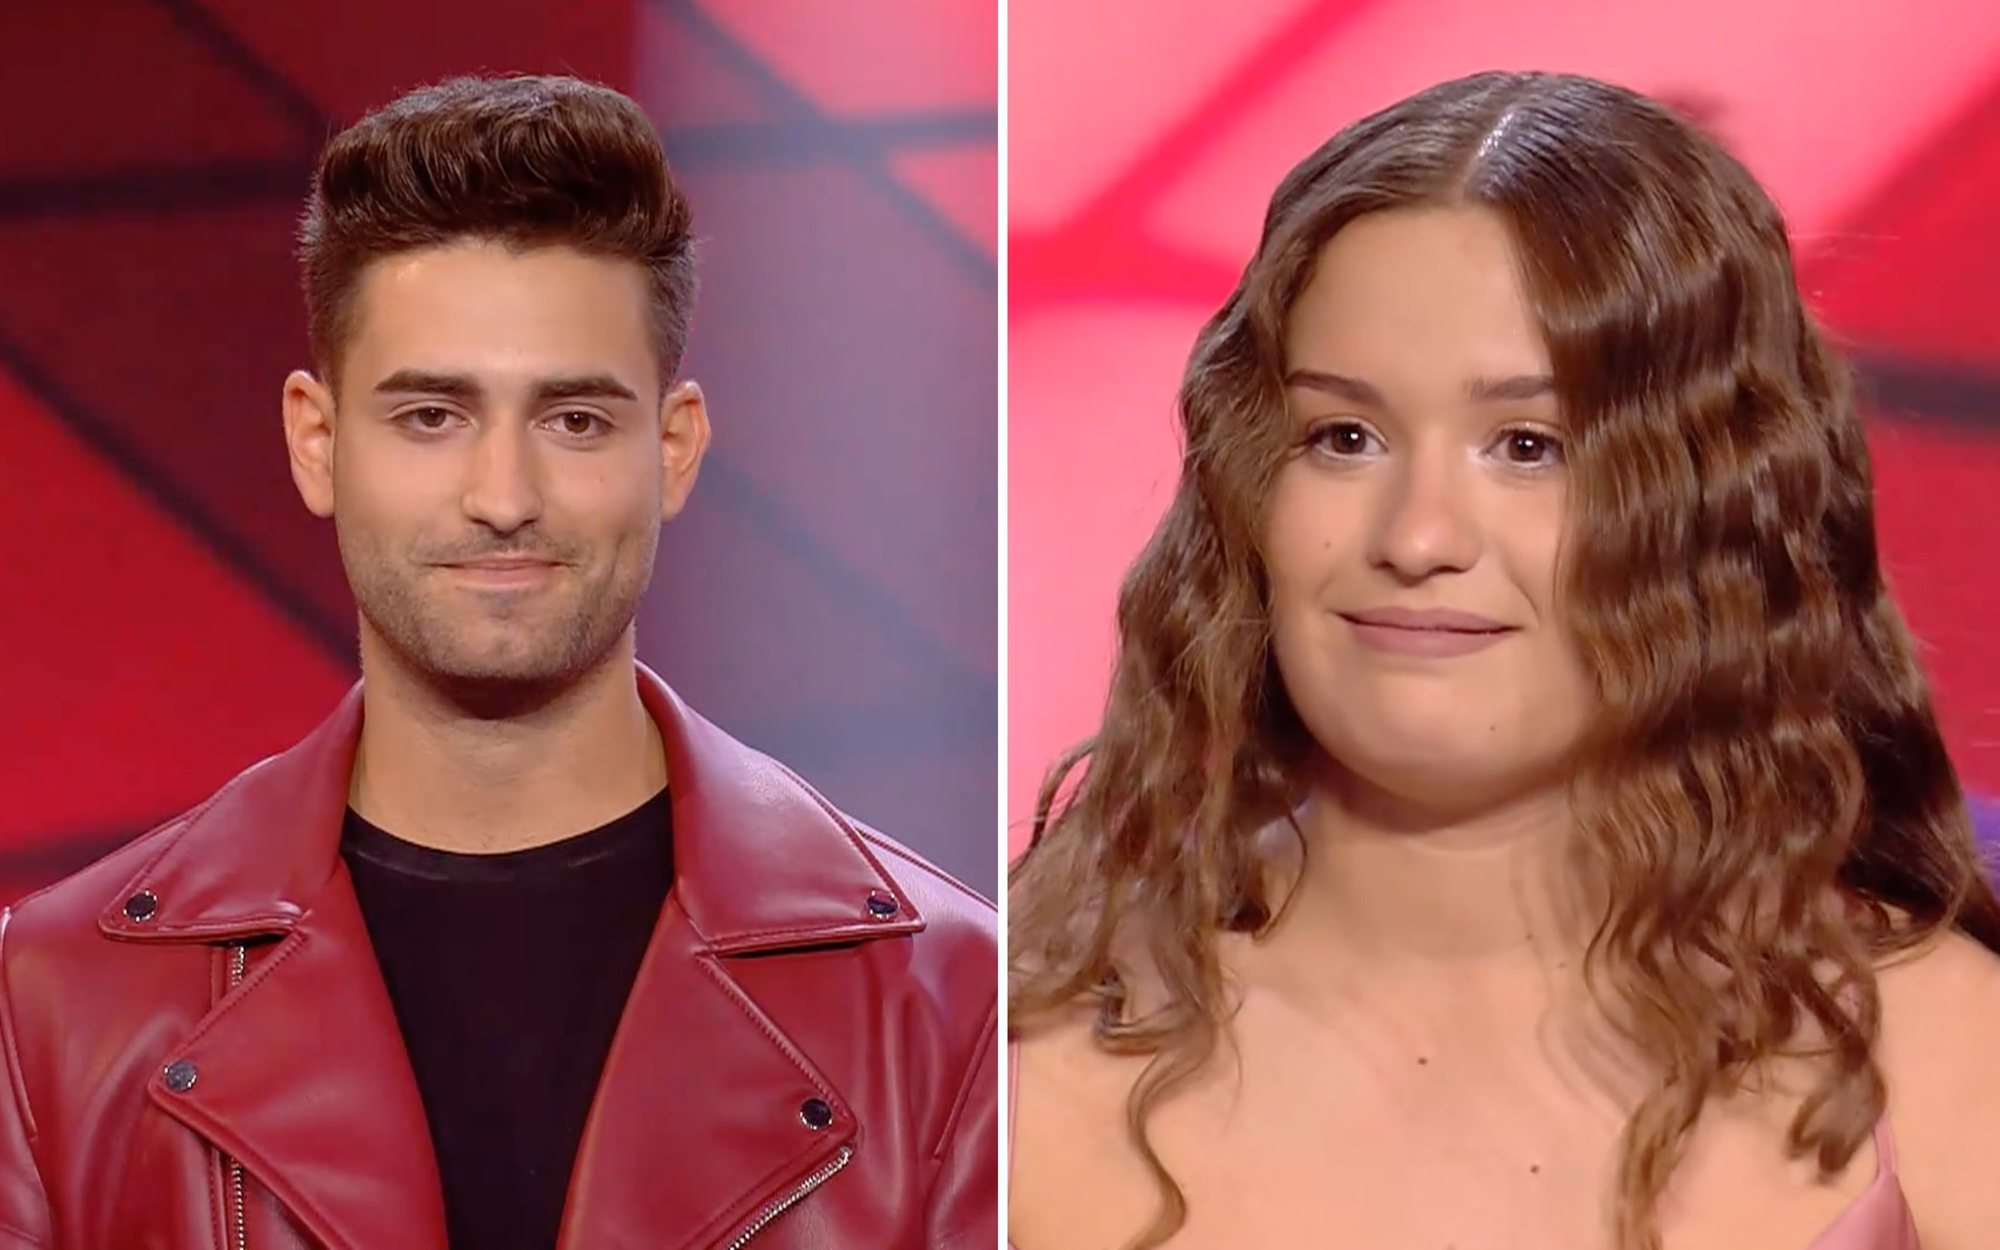 Santi Marcilla y Elsa Tortonda, nuevos finalistas de 'Got Talent España'